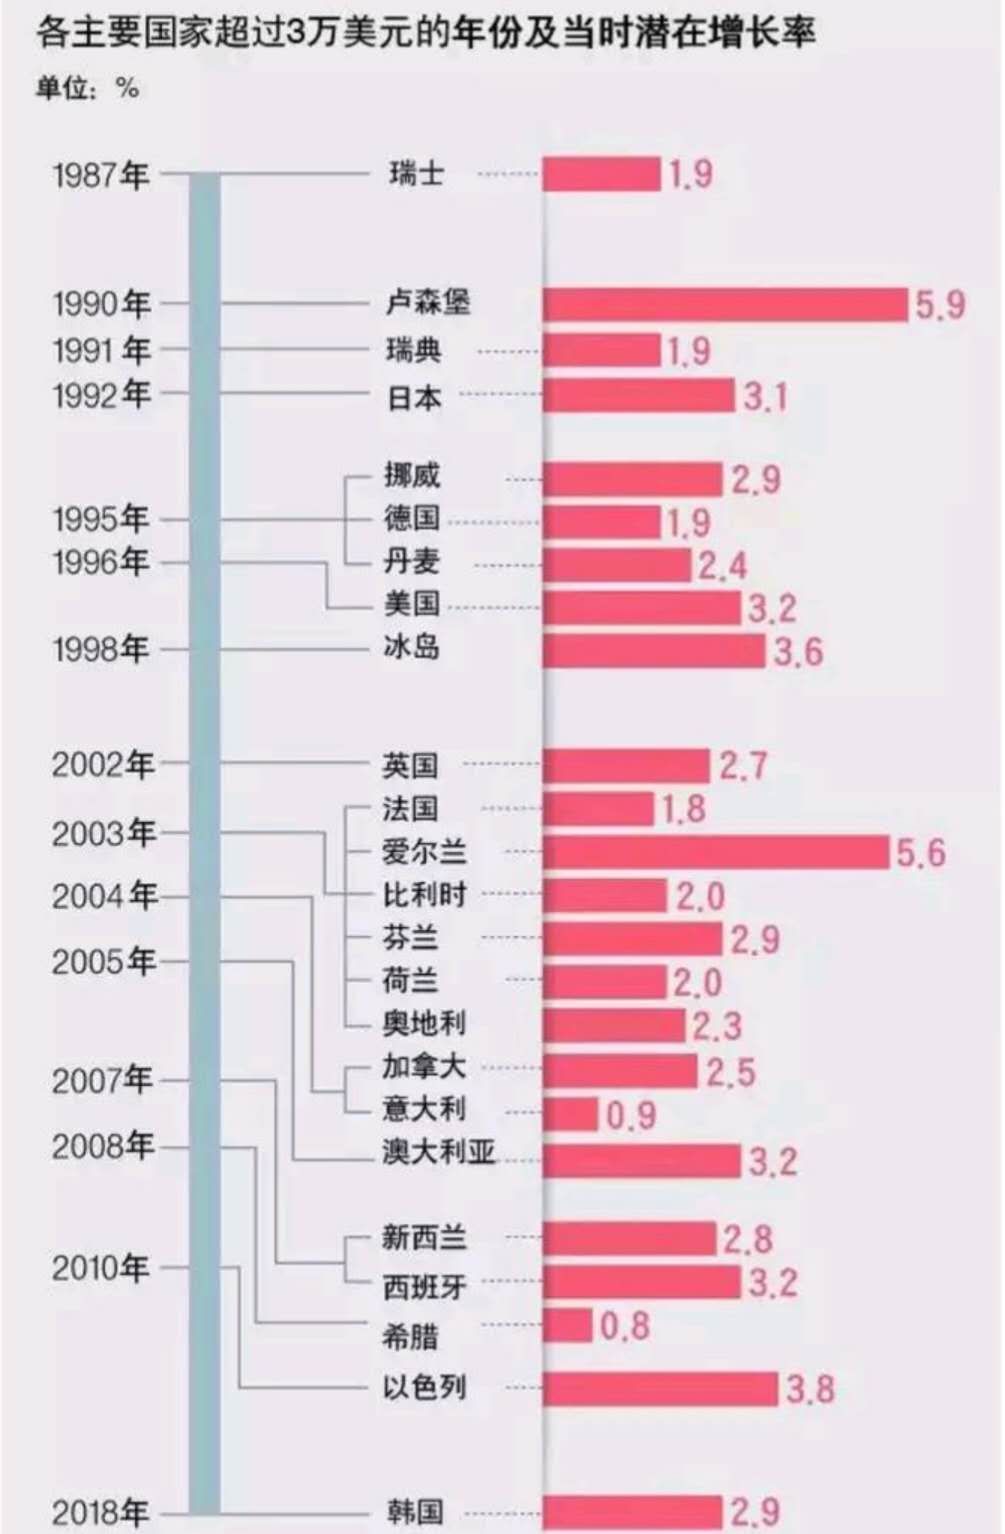 上图中亚洲国家只有日本,韩国,以色列,但新加坡2006年人均gdp也超过了